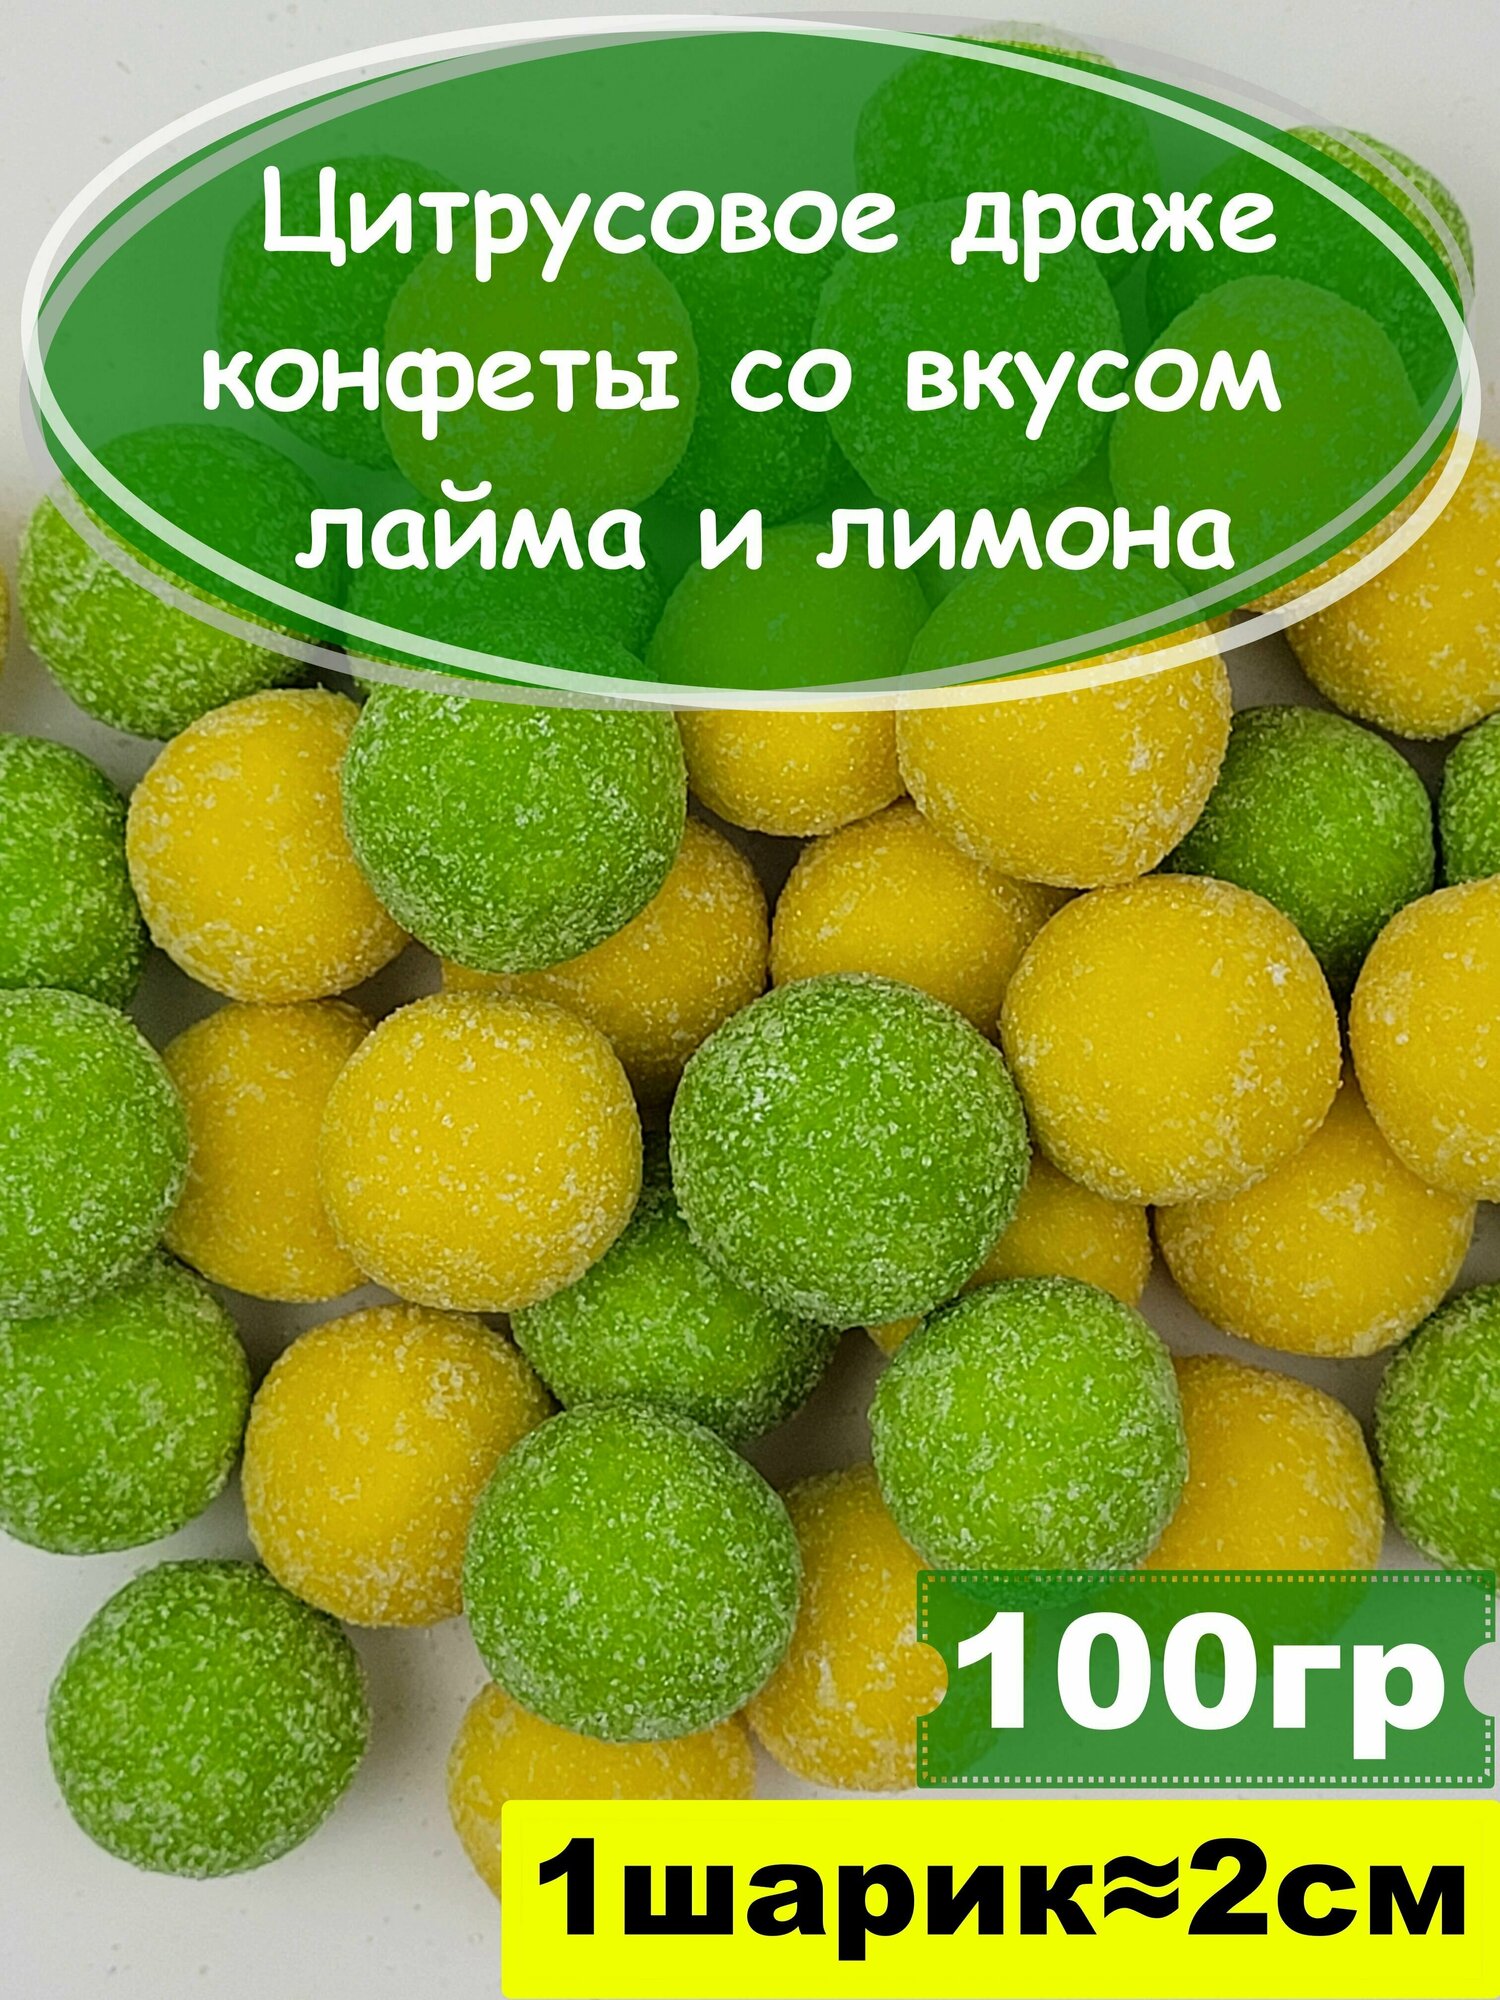 Цитрусовое драже, конфеты со вкусом лайма и лимона, 100 гр